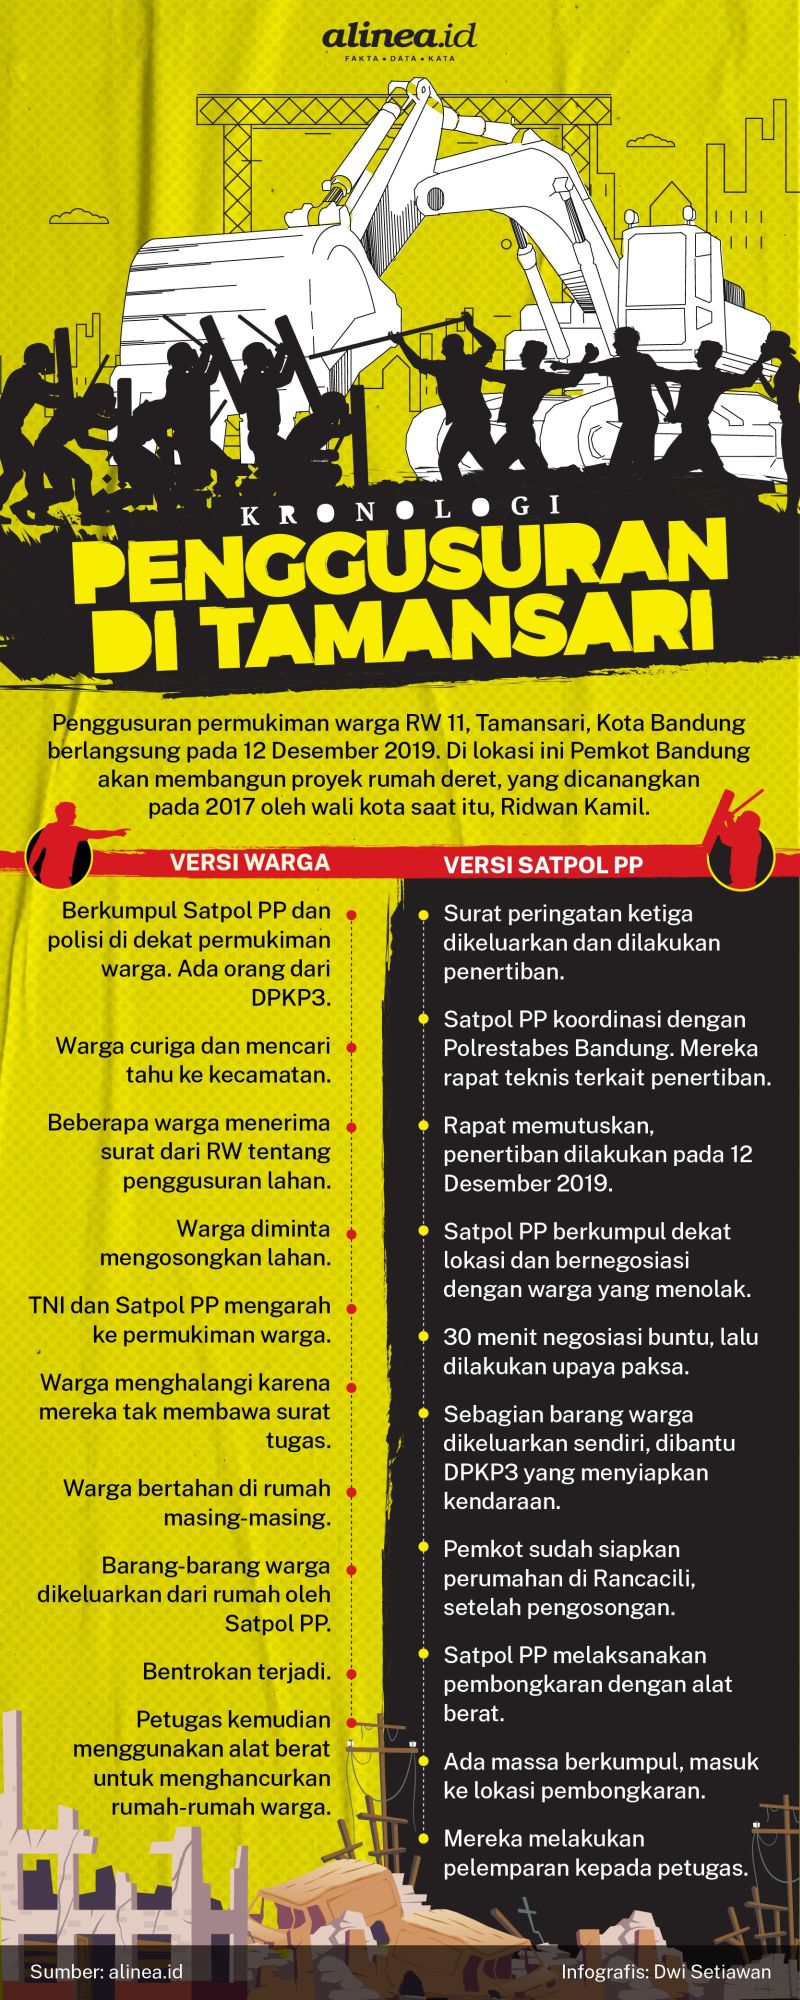 Infografik penggusuran di Tamansari. Alinea.id/Dwi Setiawan.